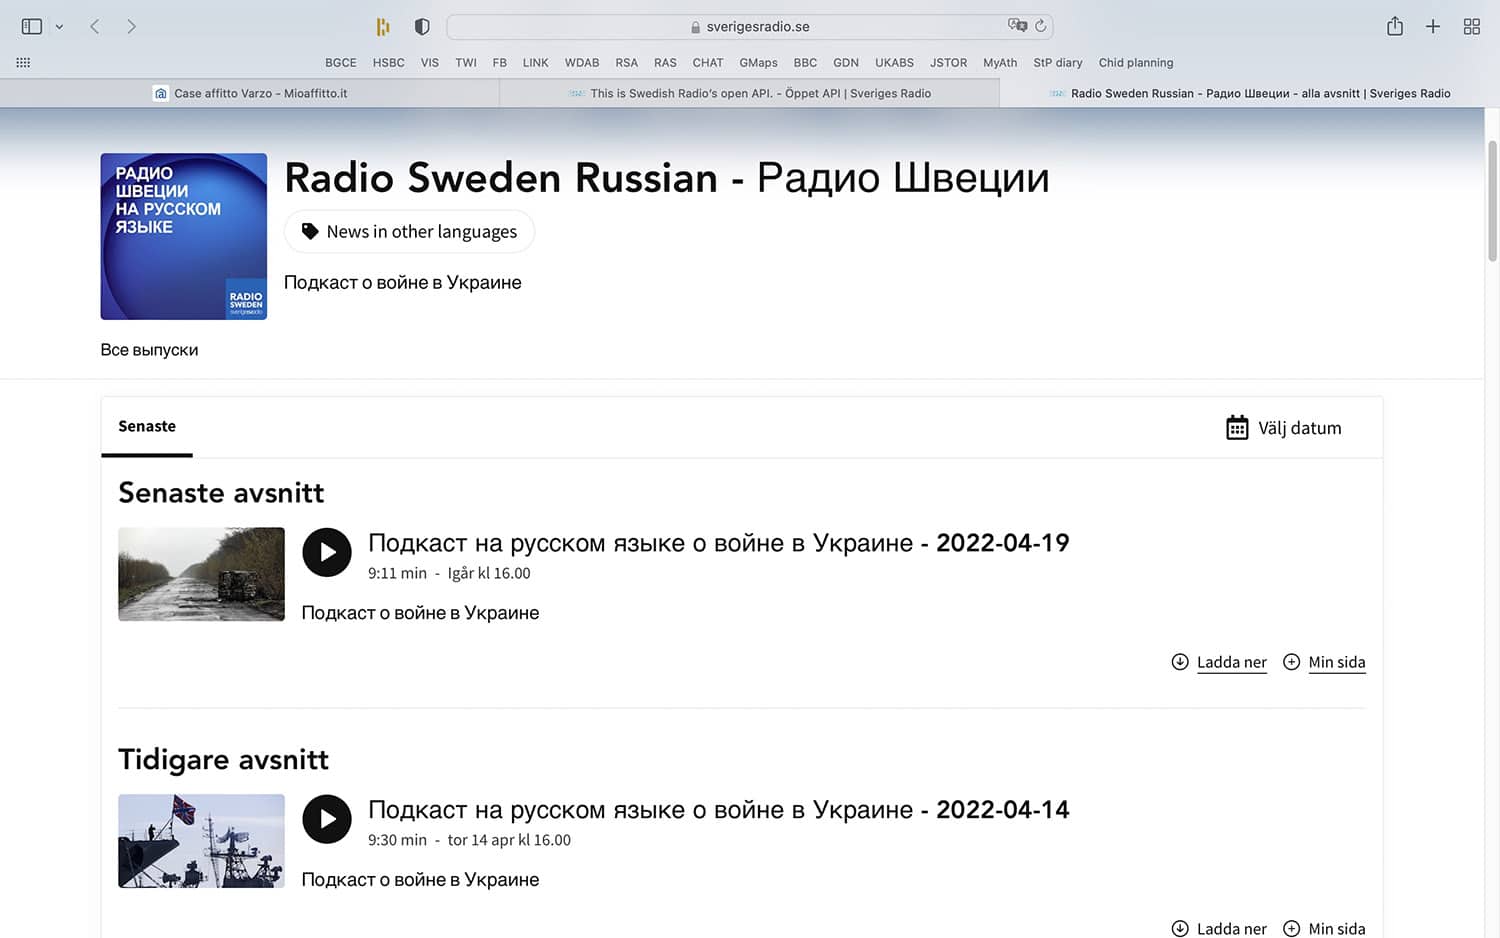 Radio Sweden’s pocasts in Russian